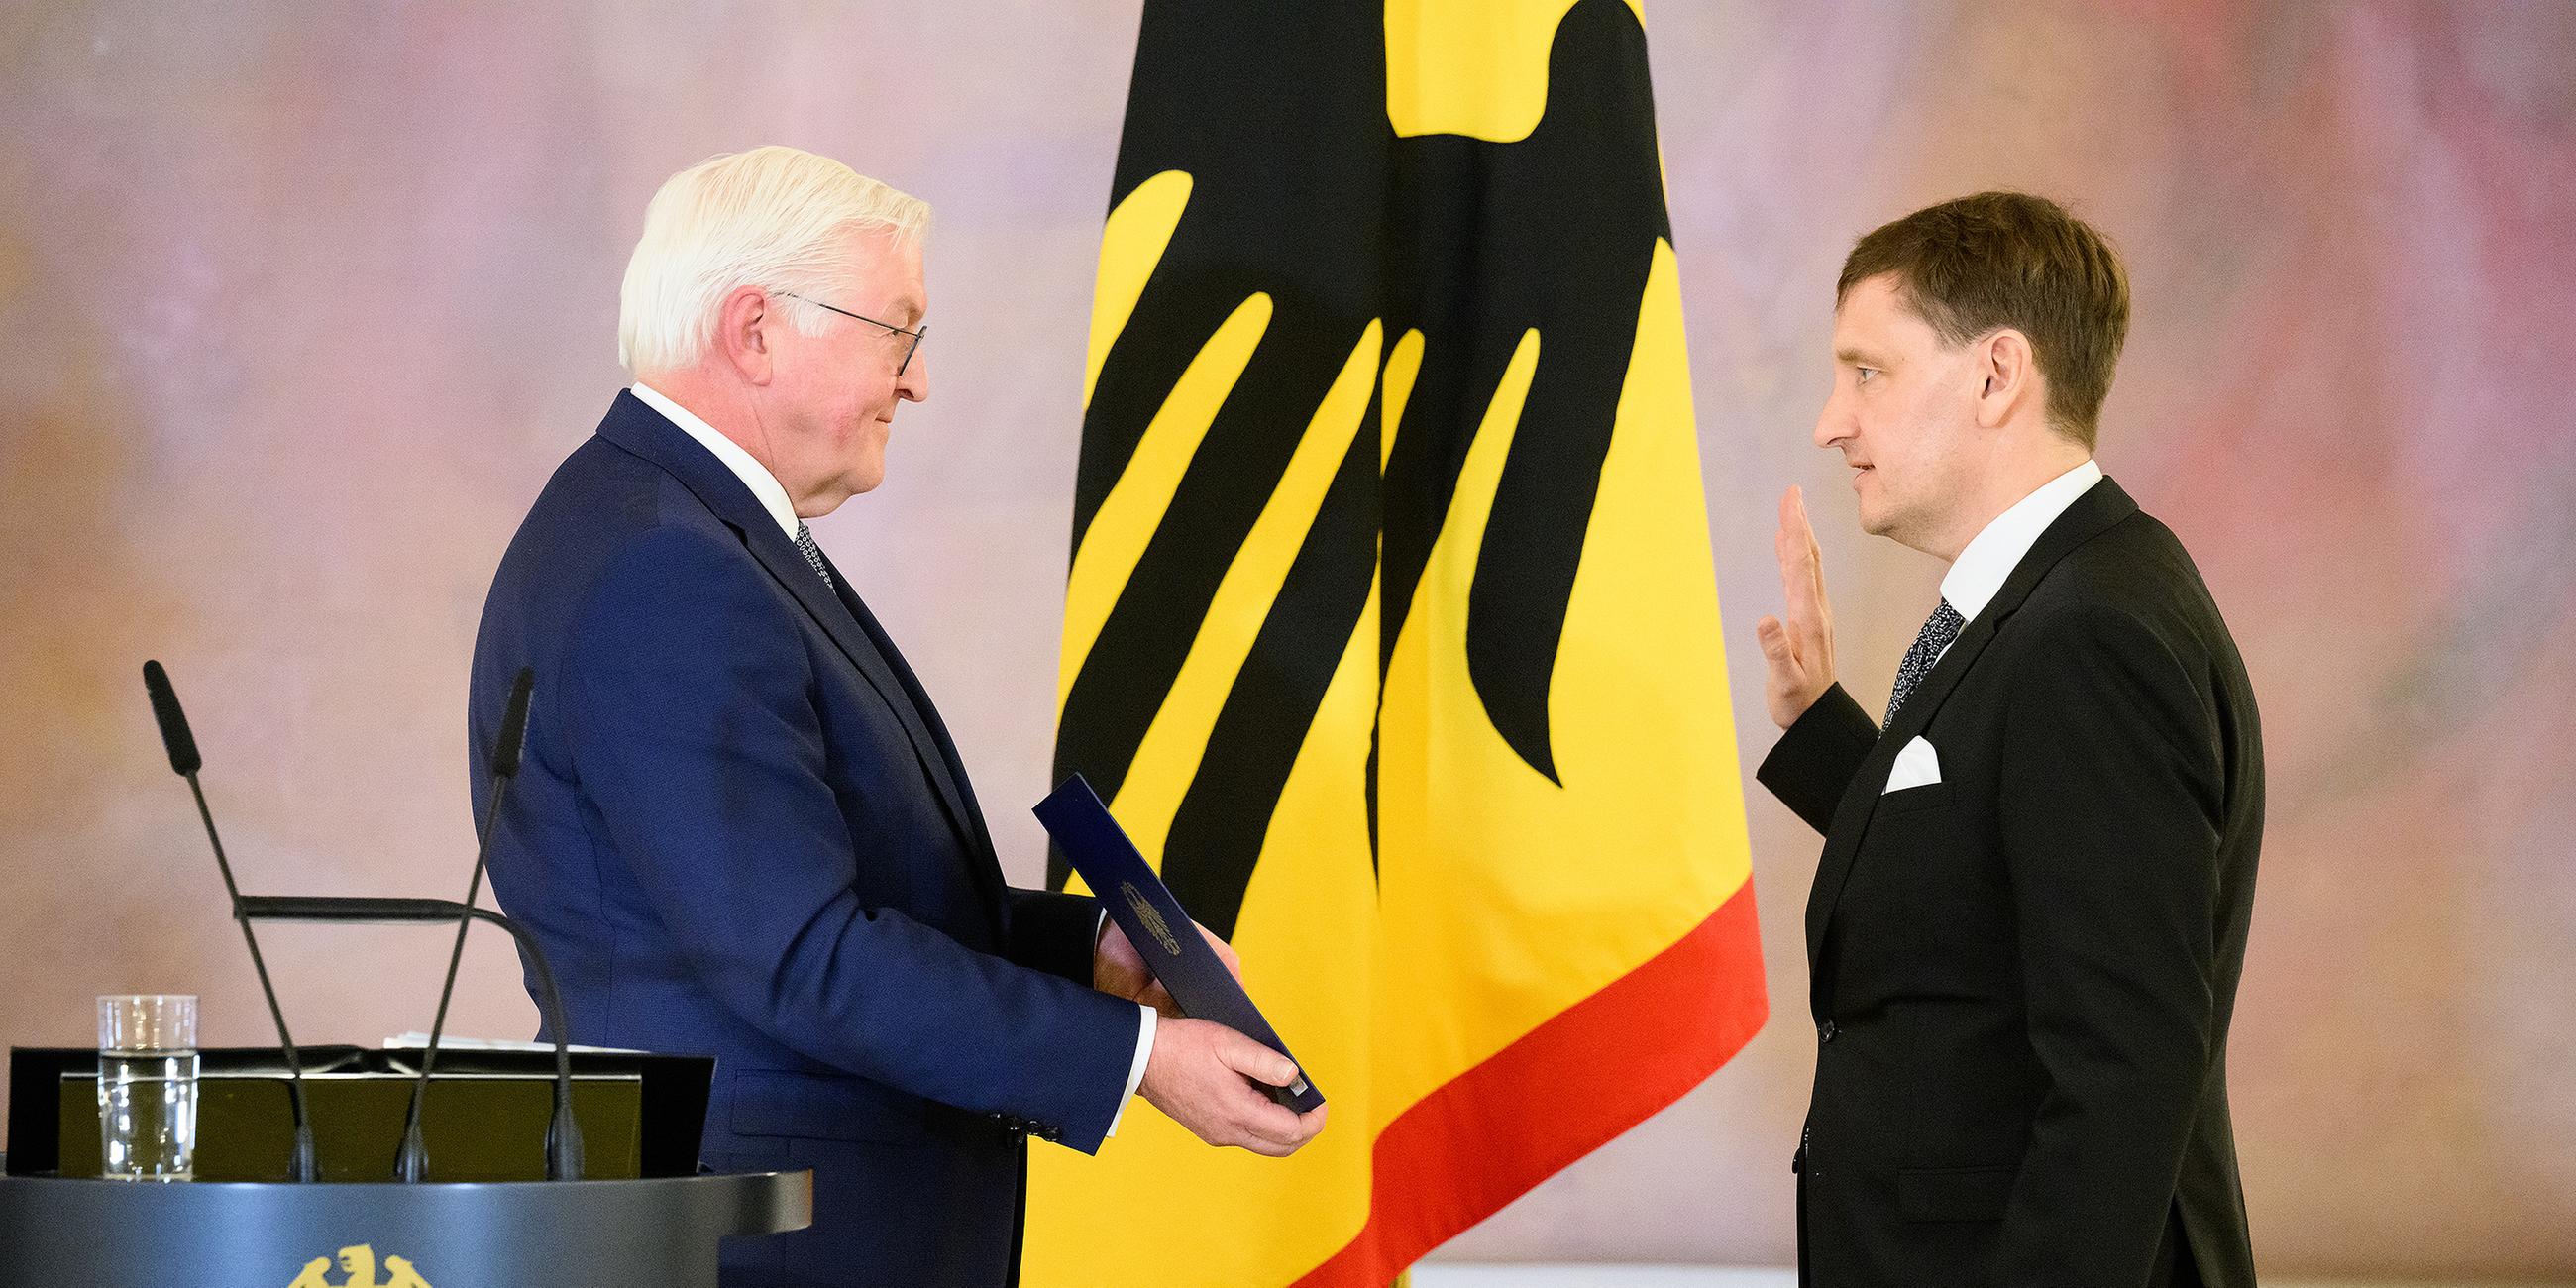 Bundespräsident Frank-Walter Steinmeier ernennt Thomas Offenloch zum neuen Richter am Bundesverfassungsgericht